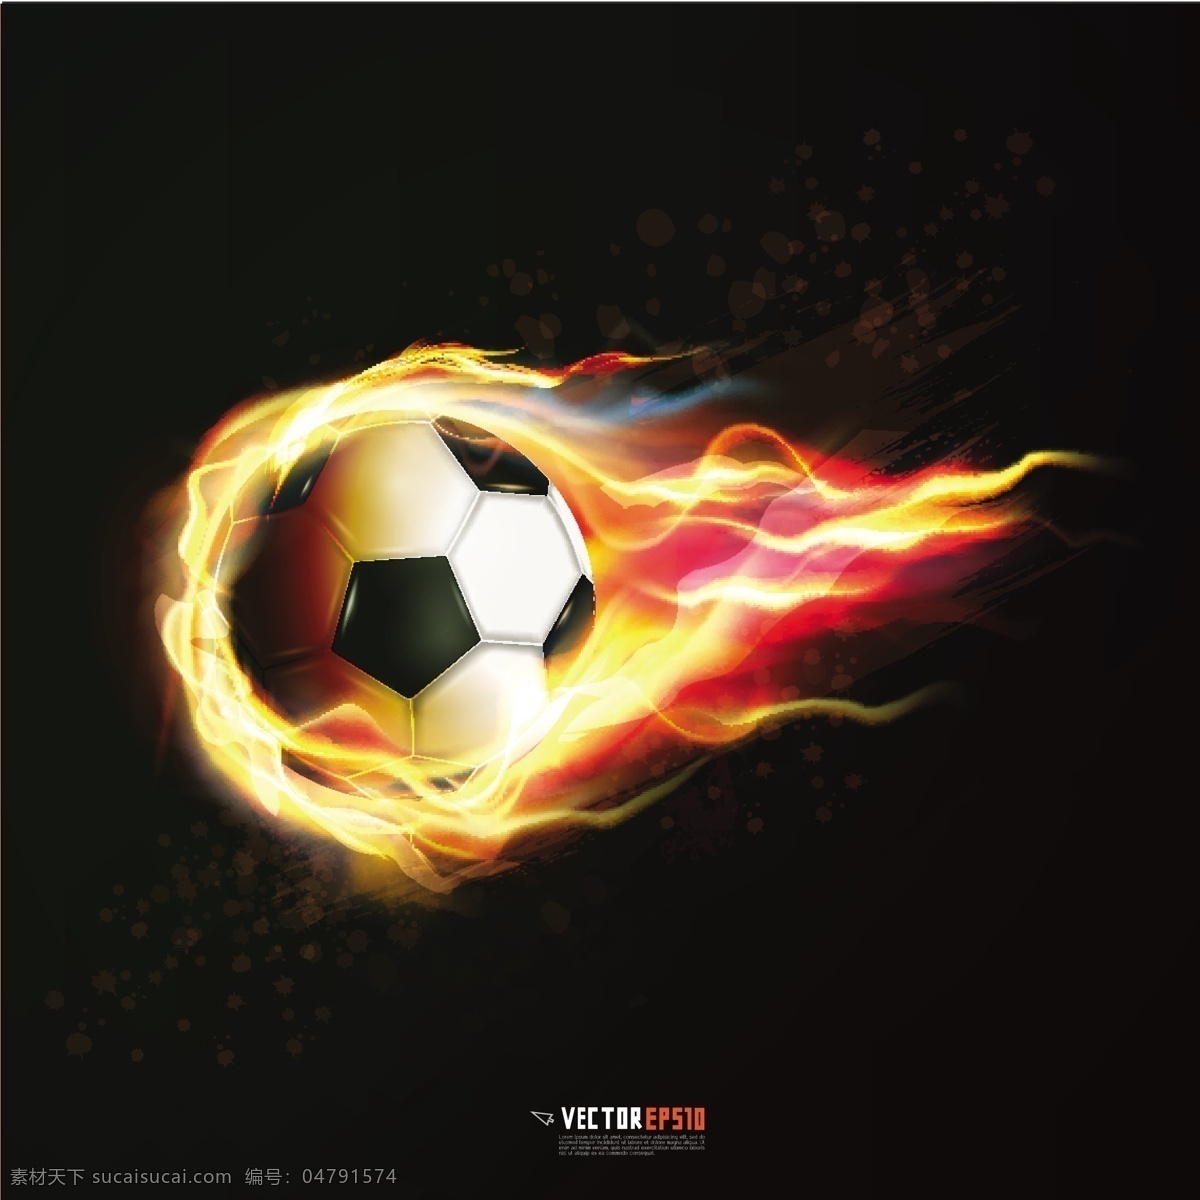 火焰足球设计 火焰 火苗 足球 足球广告 体育 运动 体育海报 体育运动 生活百科 矢量素材 黑色